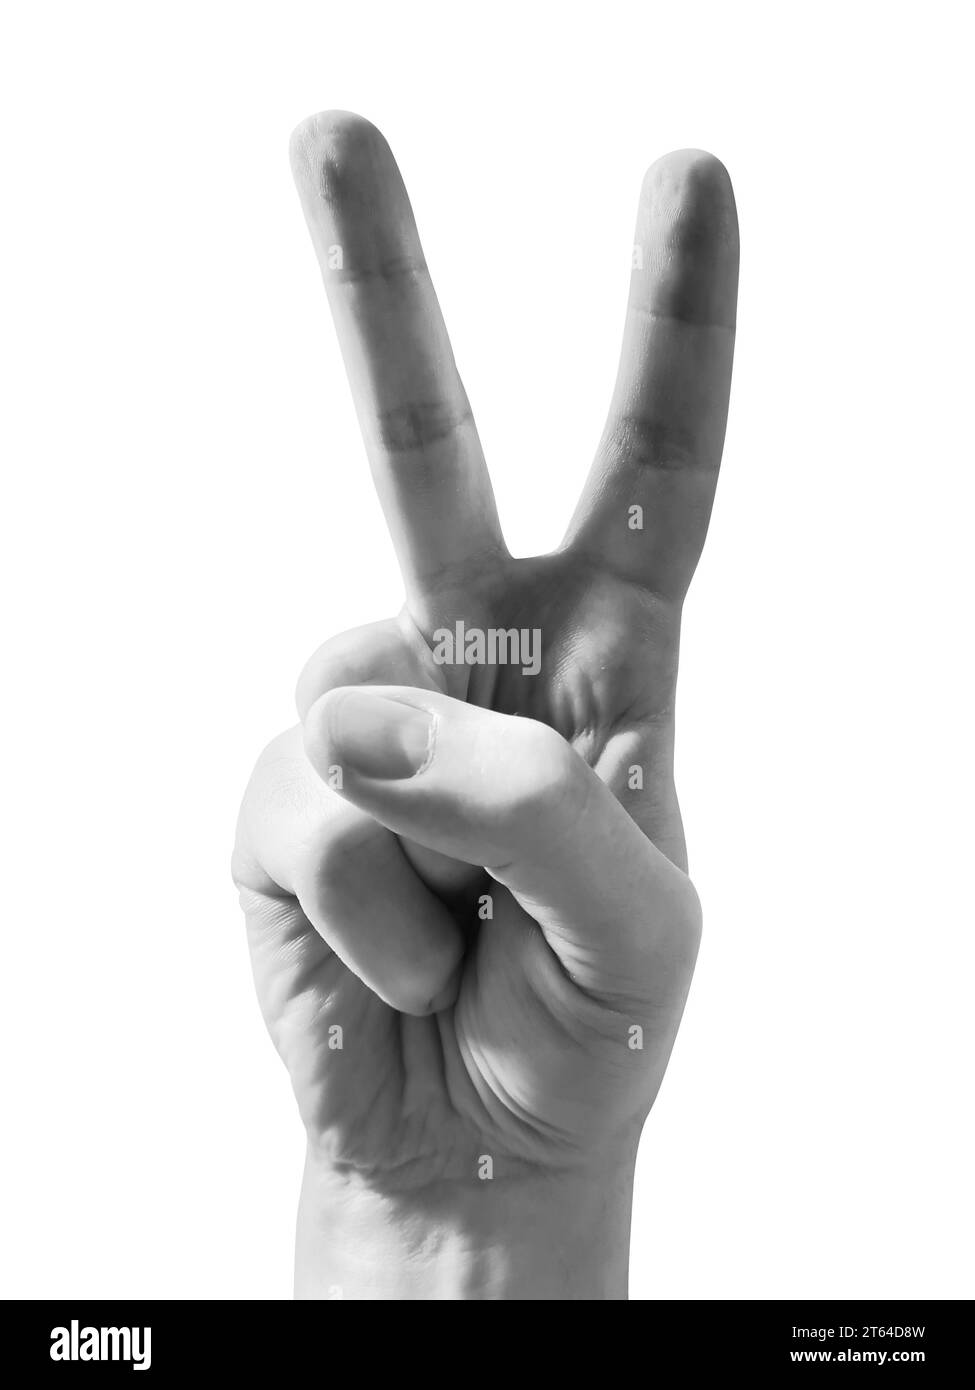 Menschliche Hand zeigt zwei Finger - Friedenszeichen Stockfoto